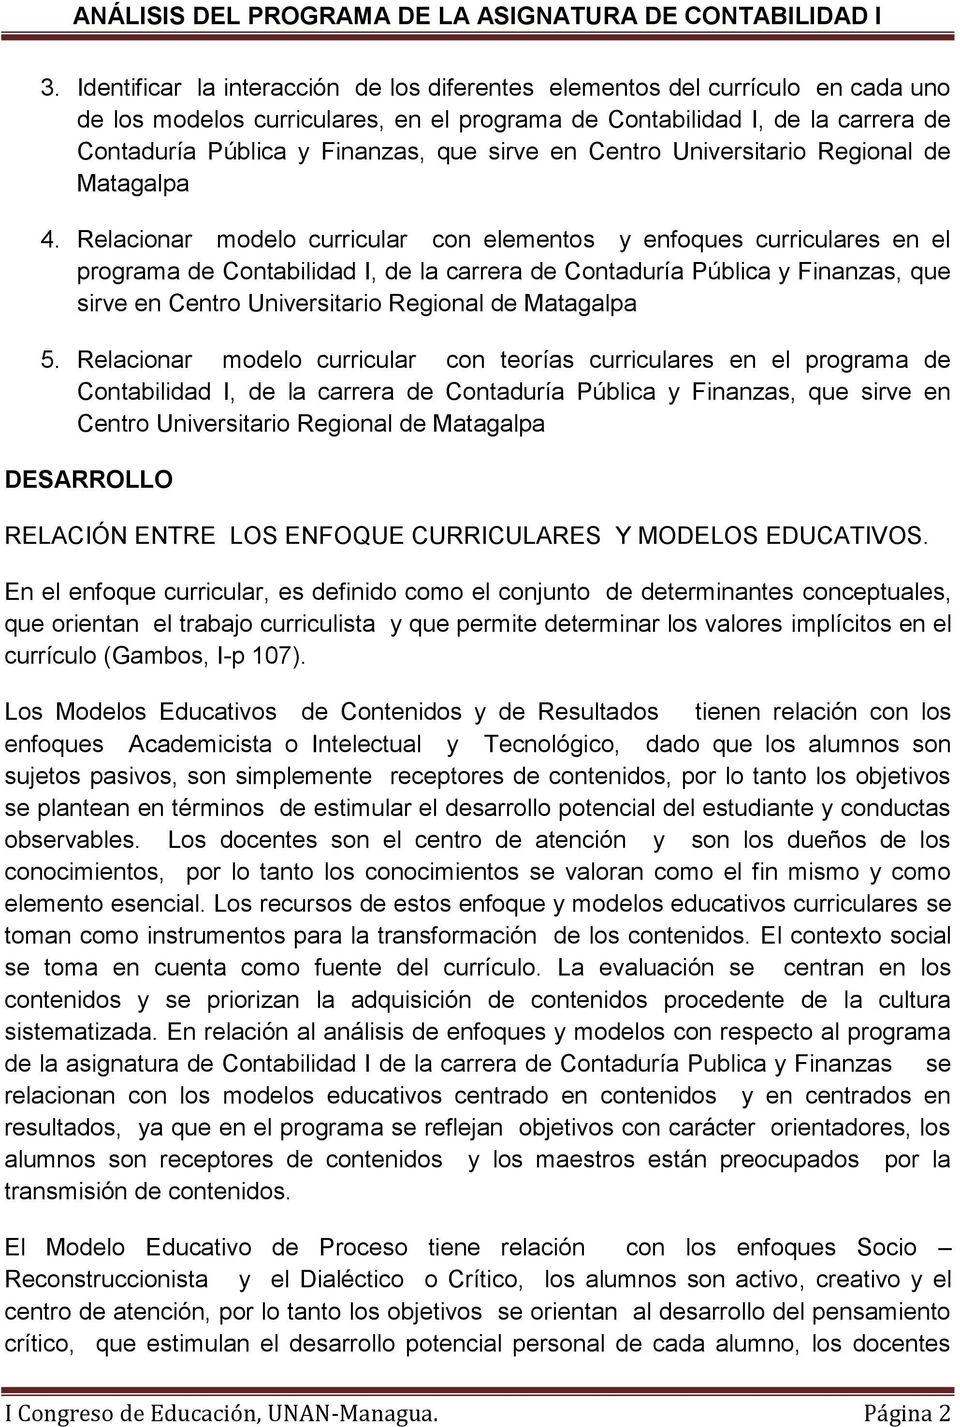 Relacionar modelo curricular con elemento y enfoque curriculare en el programa de Contabilidad I, de la carrera de Contaduría Pública y Finanza, que irve en Centro Univeritario Regional de Matagalpa